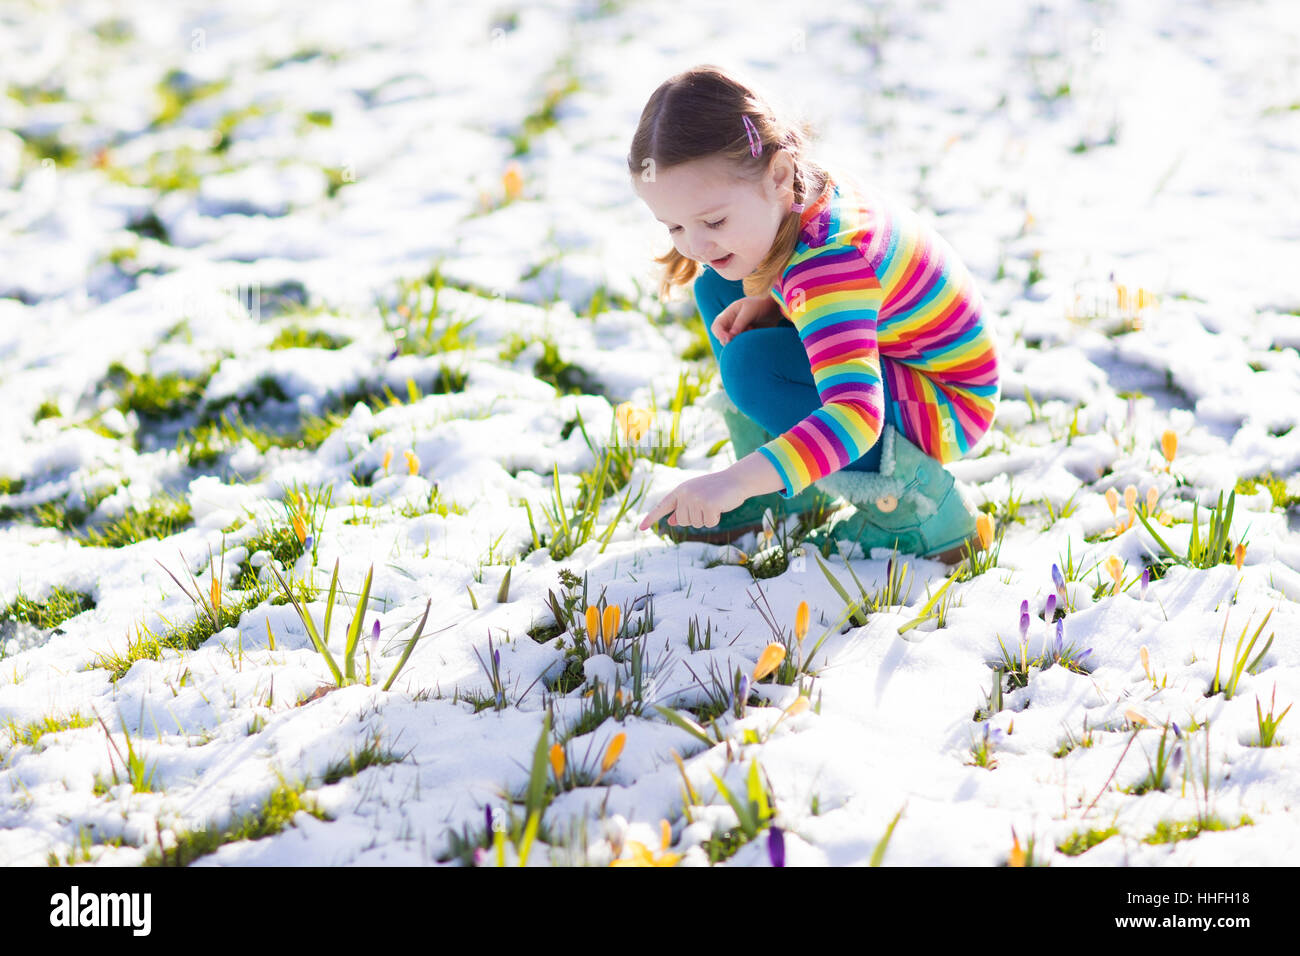 Niedliche kleine Mädchen in bunten Kleid gerade erste Krokus Frühlingsblumen unter Schnee auf sonnigen kalten Tag. Kind Kommissionierung Garten flowe Stockfoto